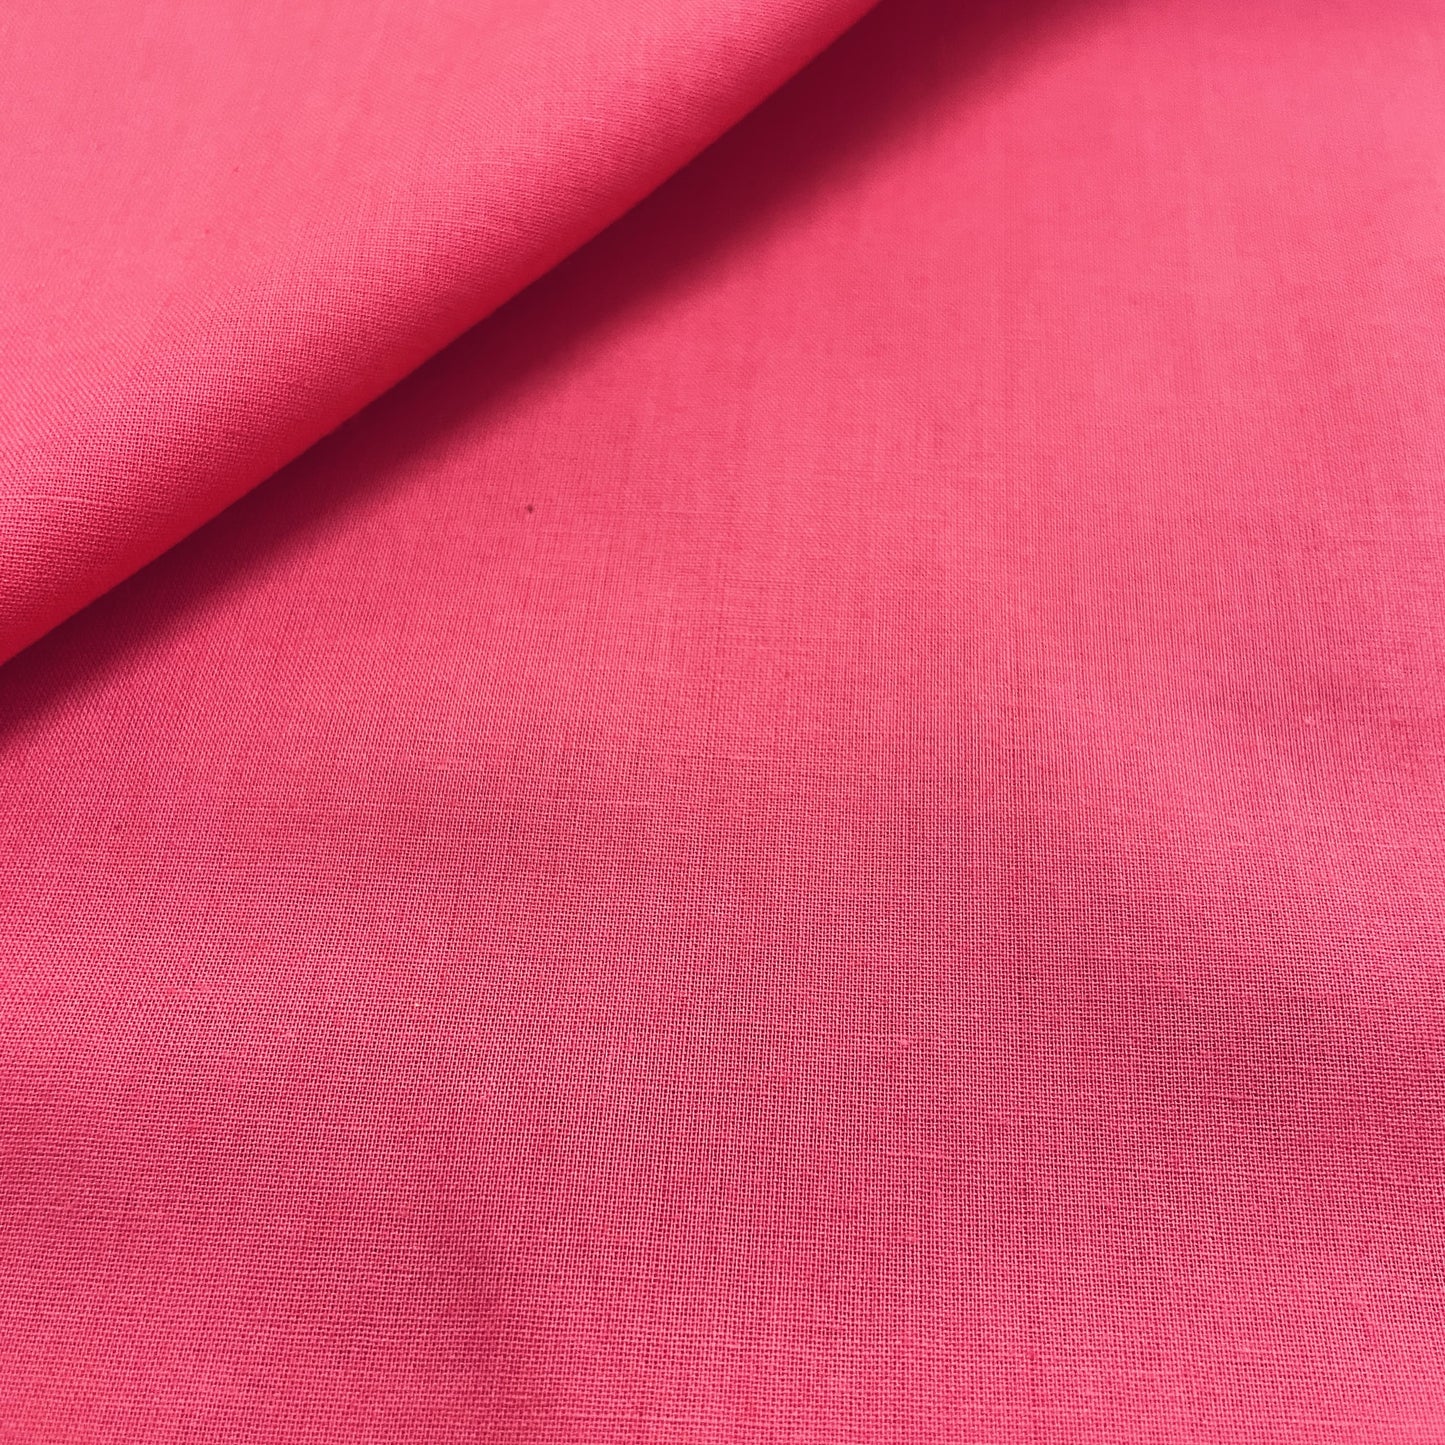 Premium Pink Solid Cotton Mulmul Fabric